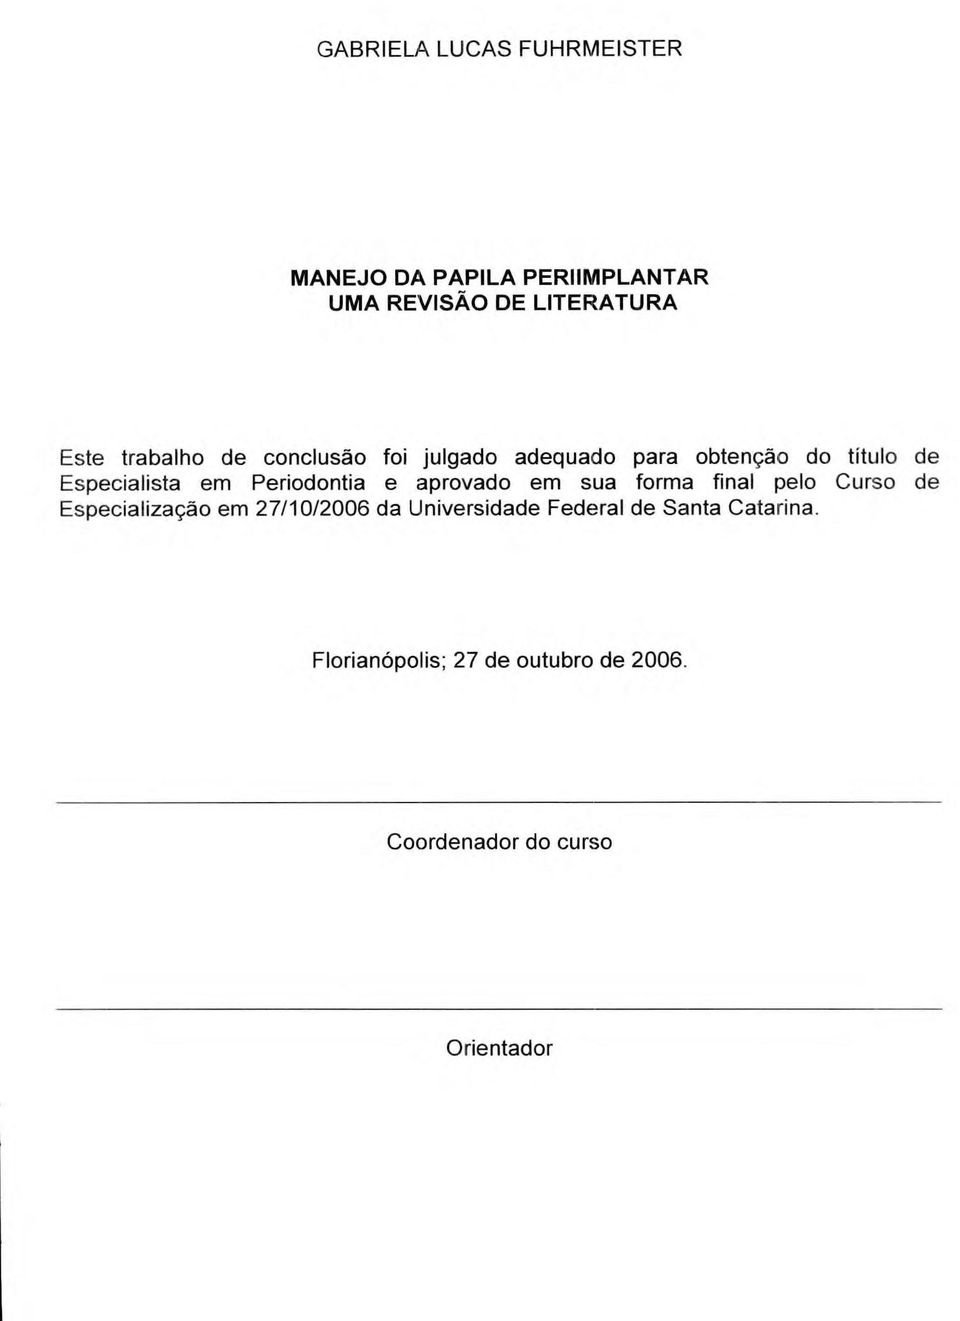 Periodontia e aprovado em sua forma final pelo Curso de Especialização em 27/10/2006 da